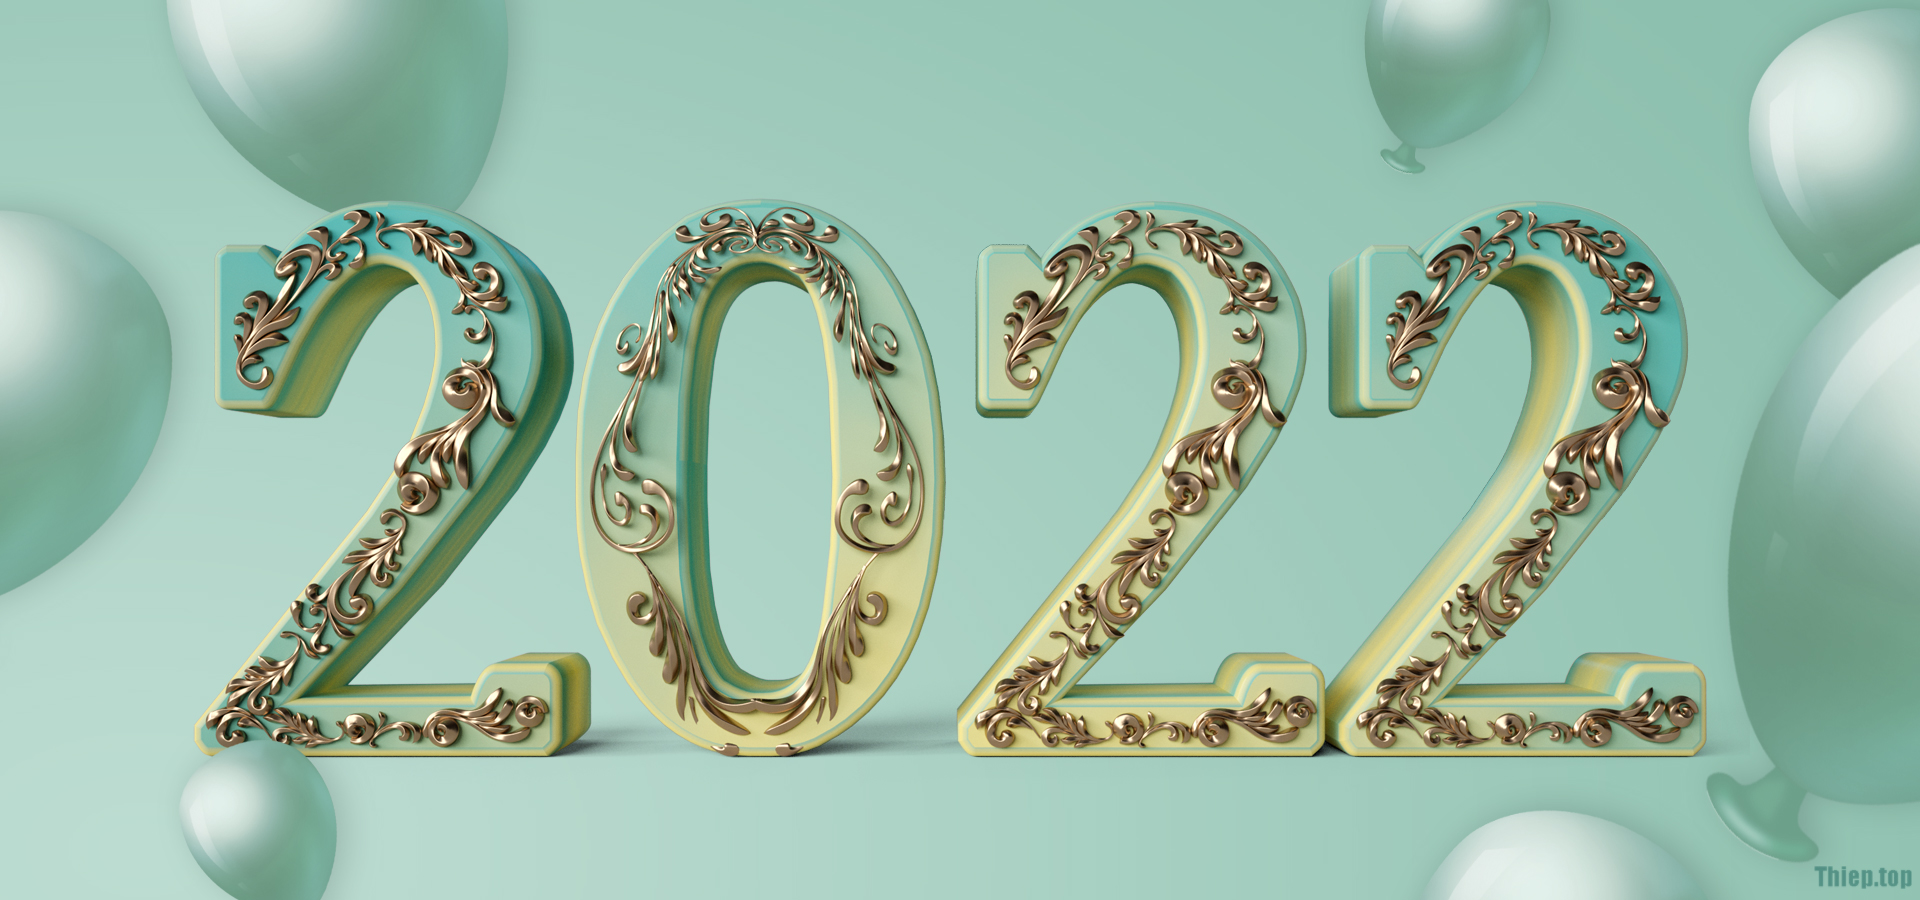 Top Hình nền chúc mừng năm mới 2022 Full HD Tải miễn phí - Hình 2